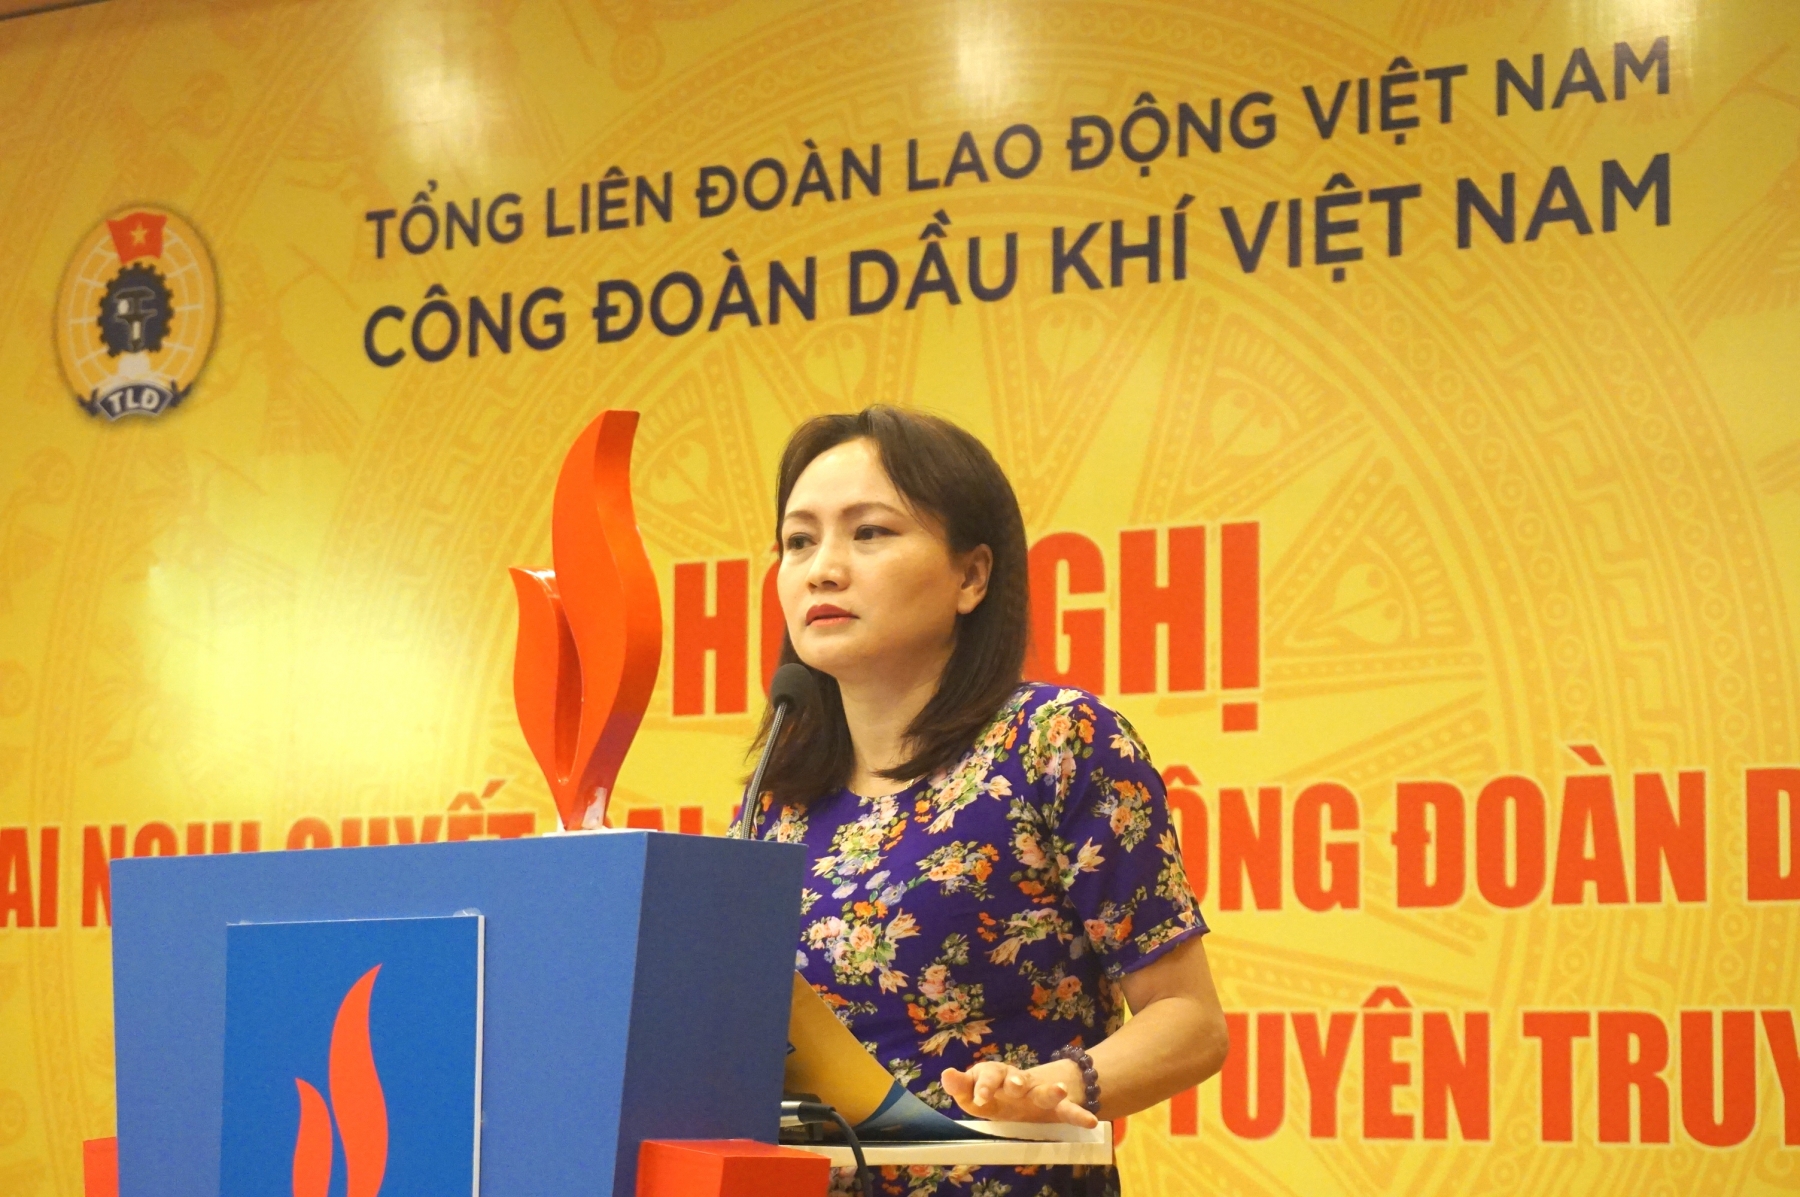 Công đoàn Dầu khí Việt Nam tổ chức Hội nghị công tác báo chí, tuyên truyền khu vực phía Nam